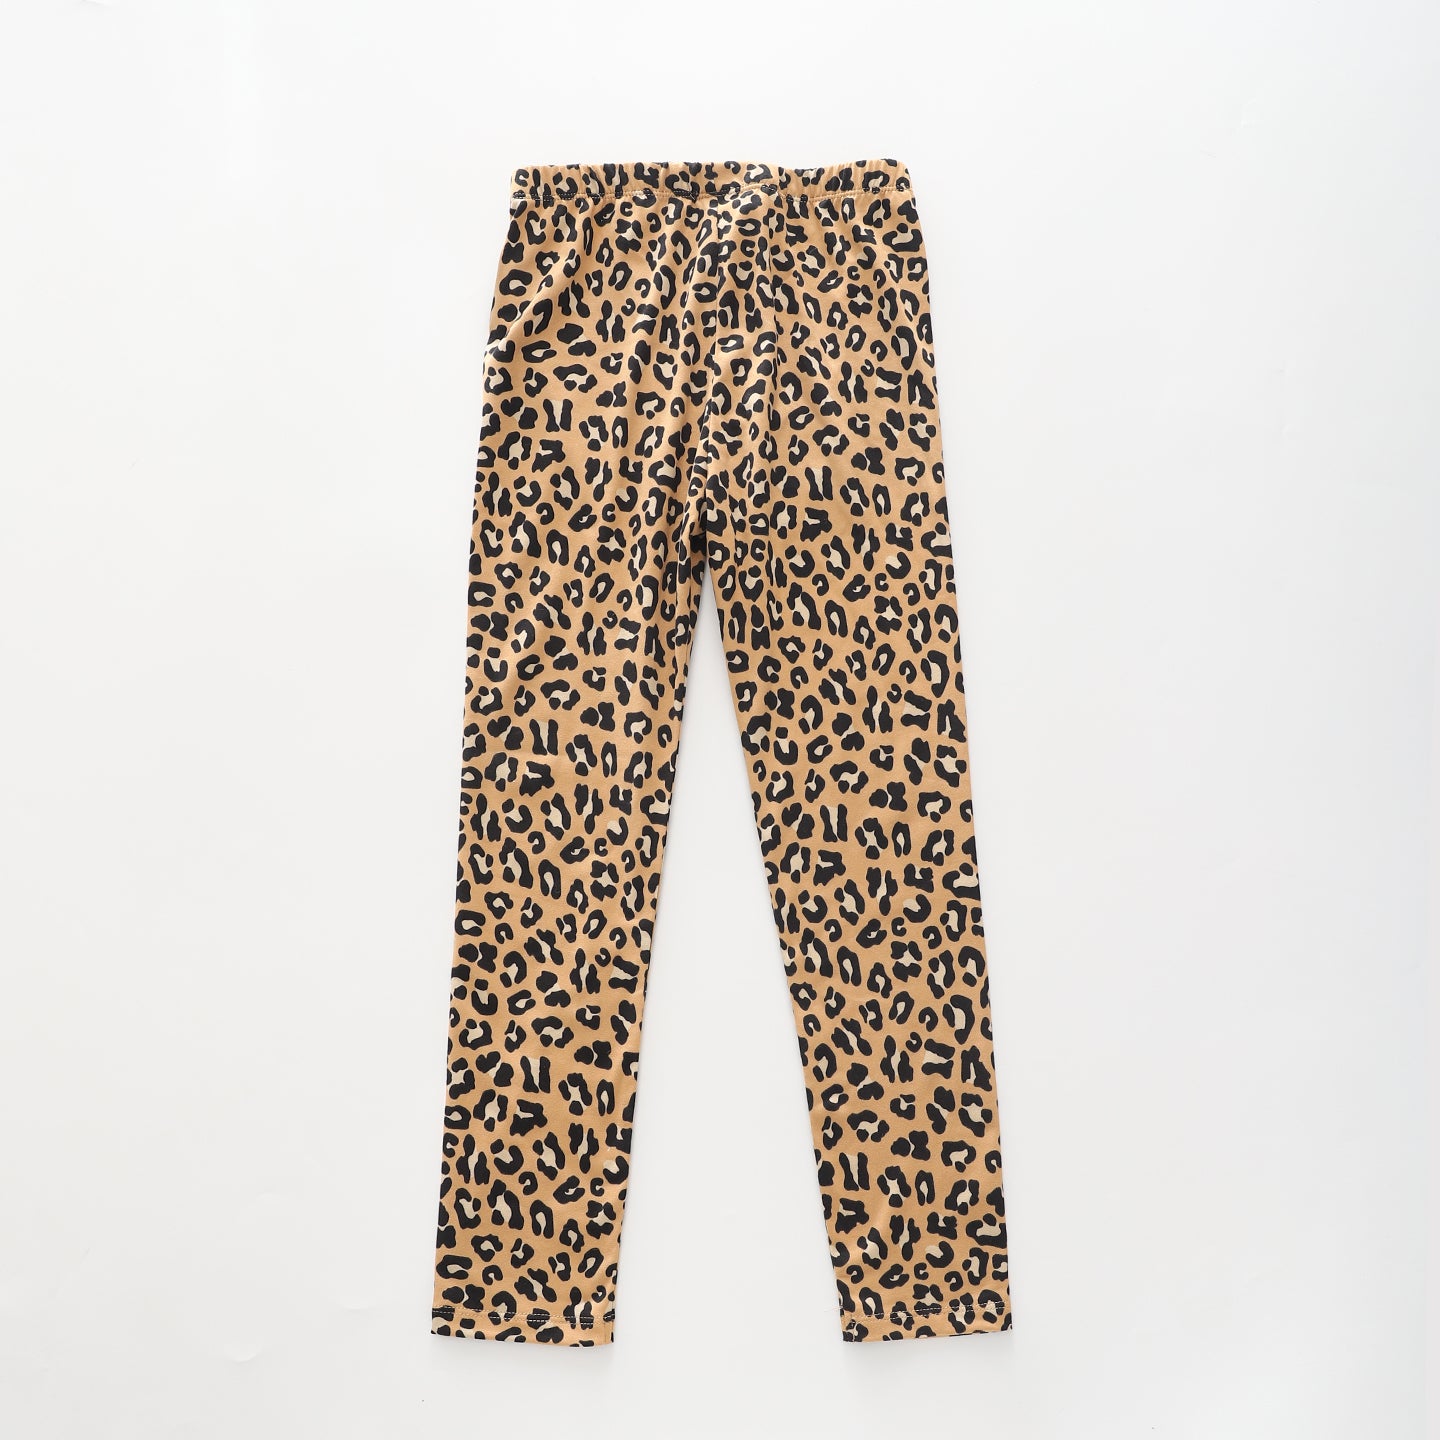 Leopard Print, Older Girls Leggings